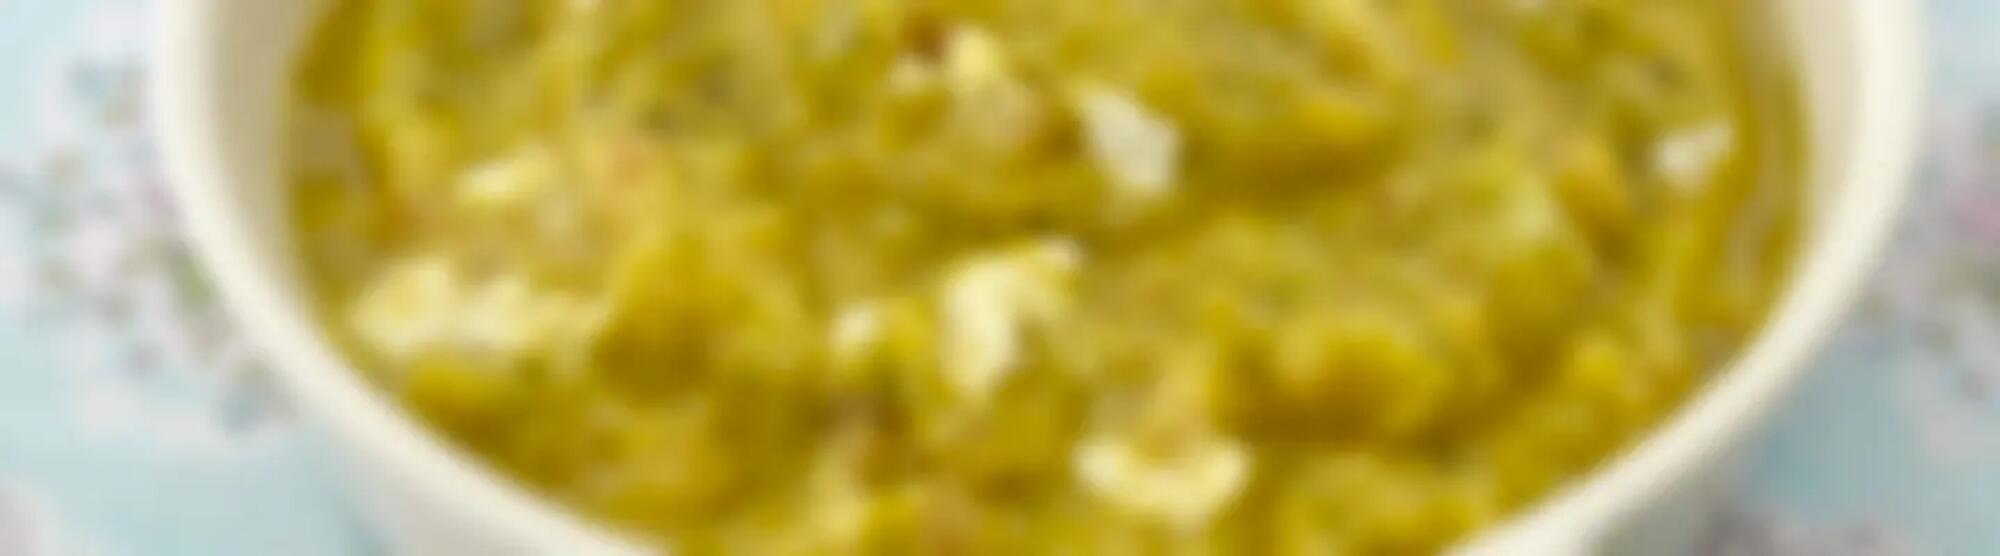 Recette : Purée de ratatouille douce au fromage frais